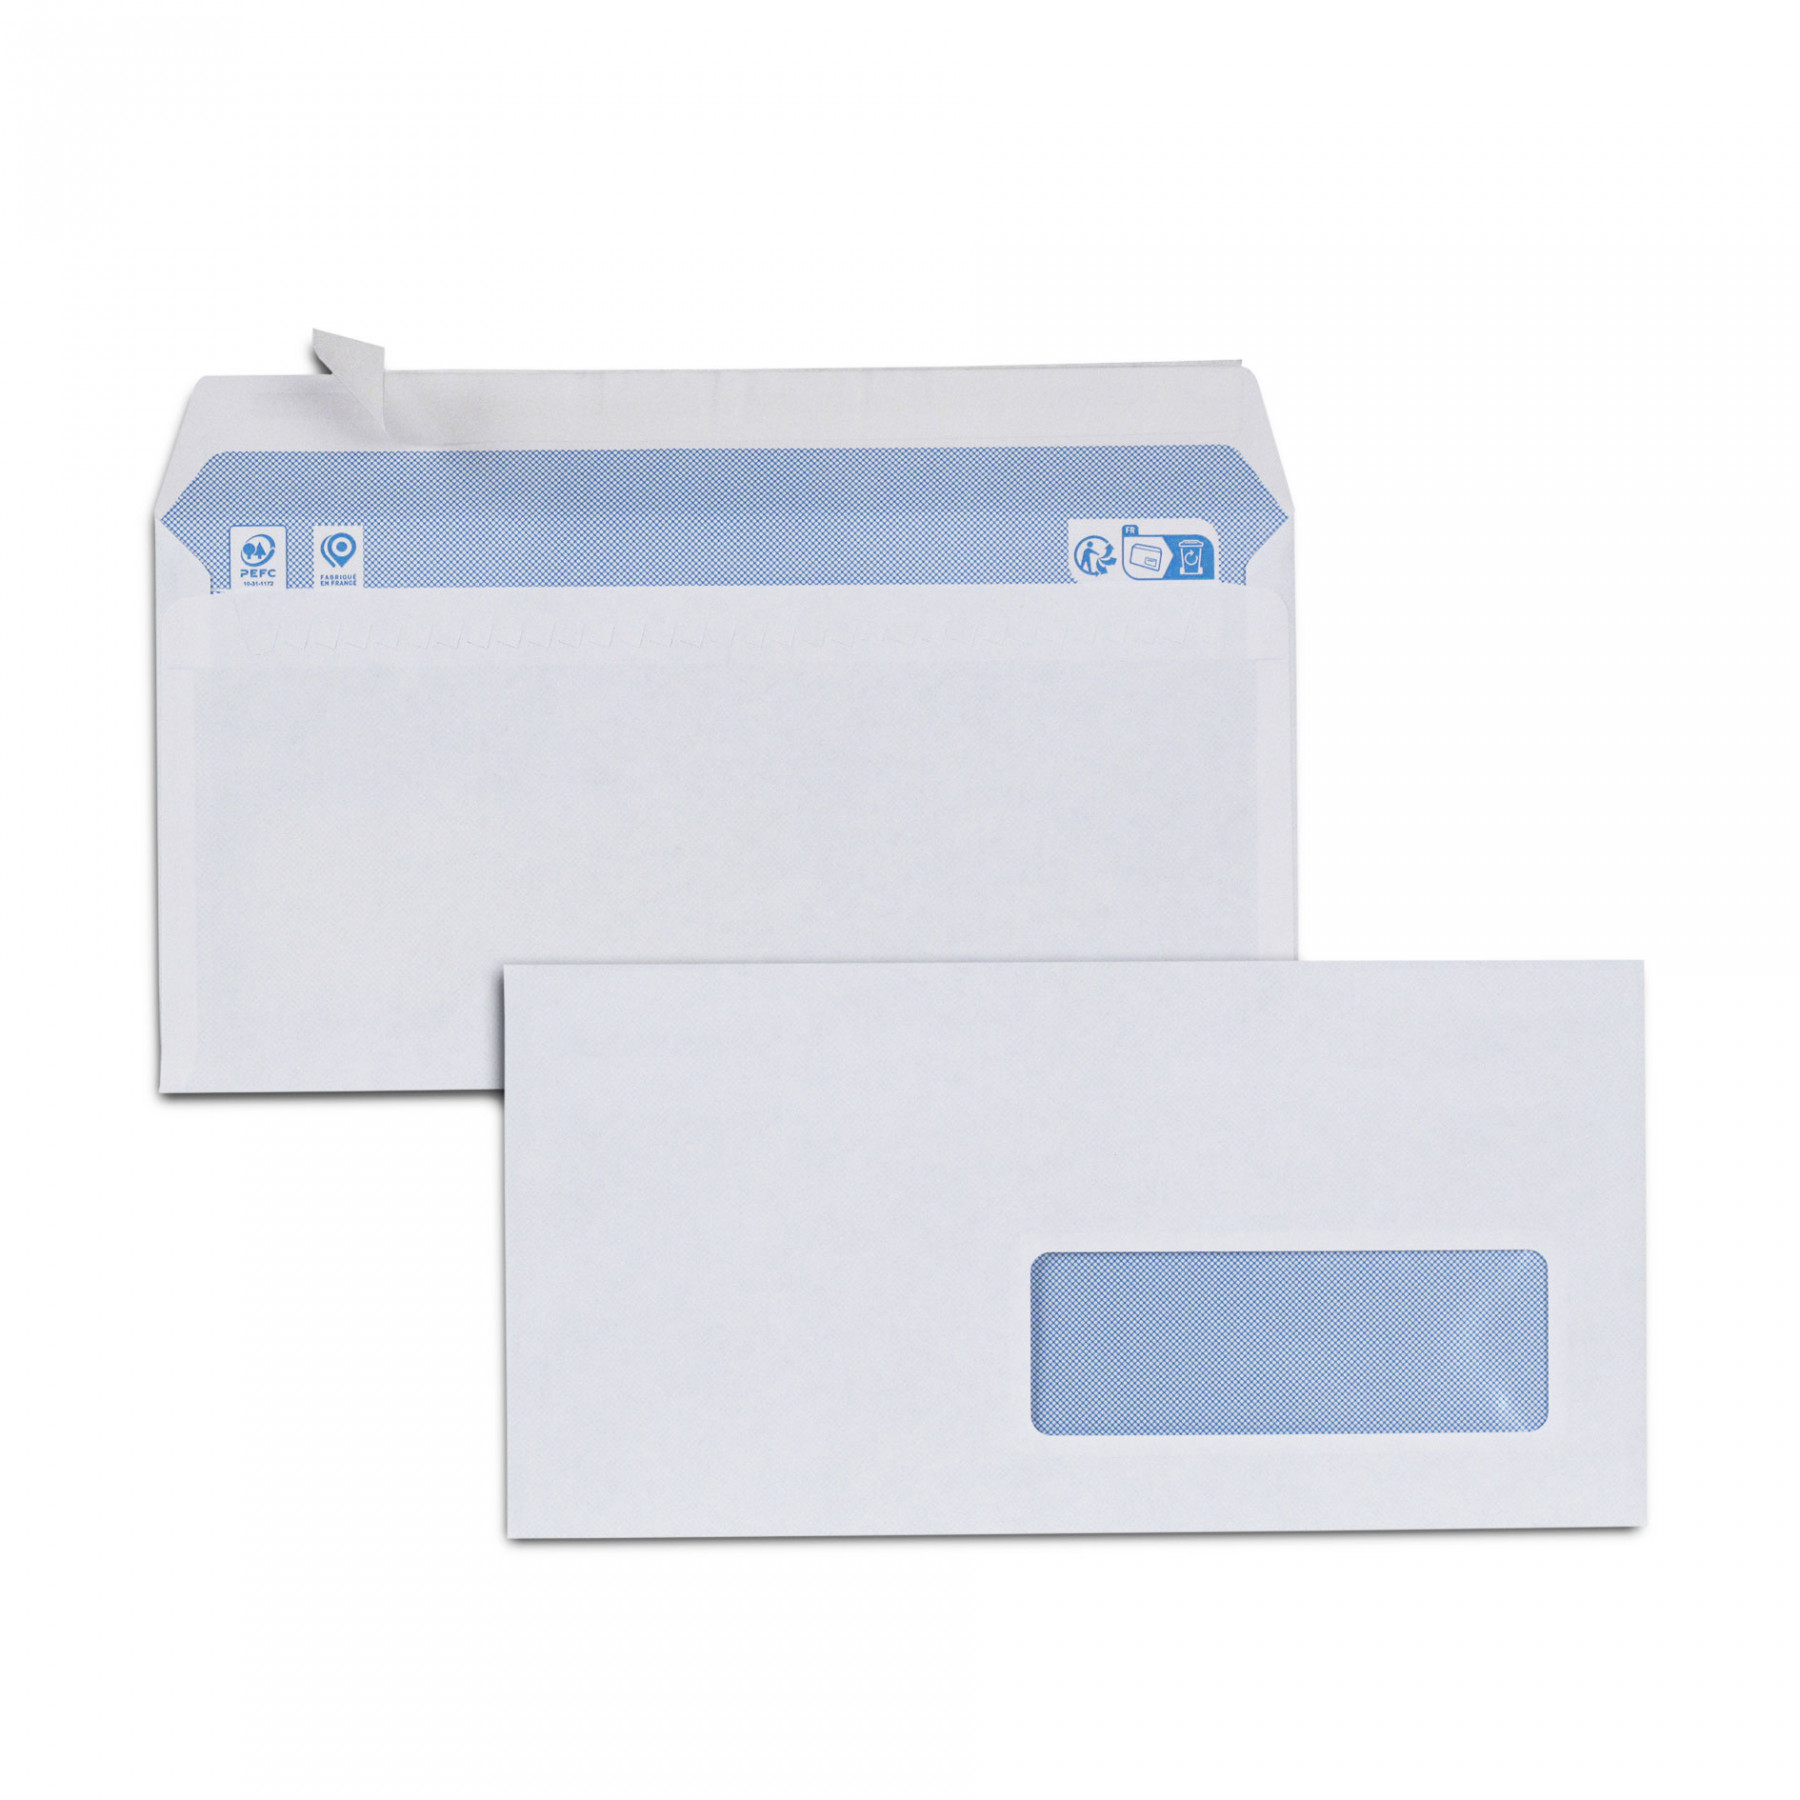 Enveloppe blanche 205 x 205 mm 120g sans fenêtre - autocollante